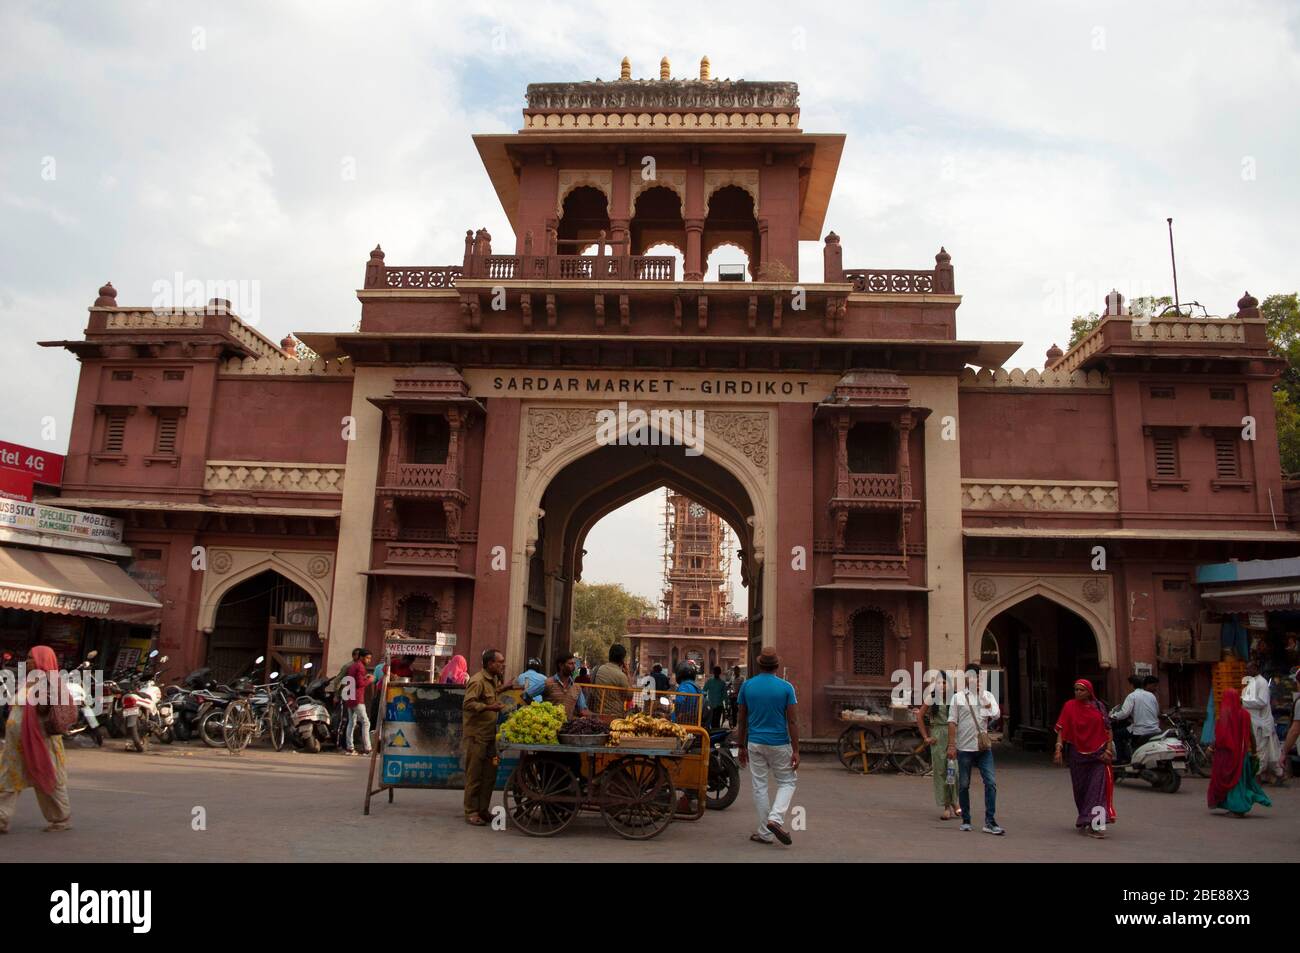 Entrée au marché de Sardar un site touristique populaire, Jodhpur, Rajasthan, Inde Banque D'Images